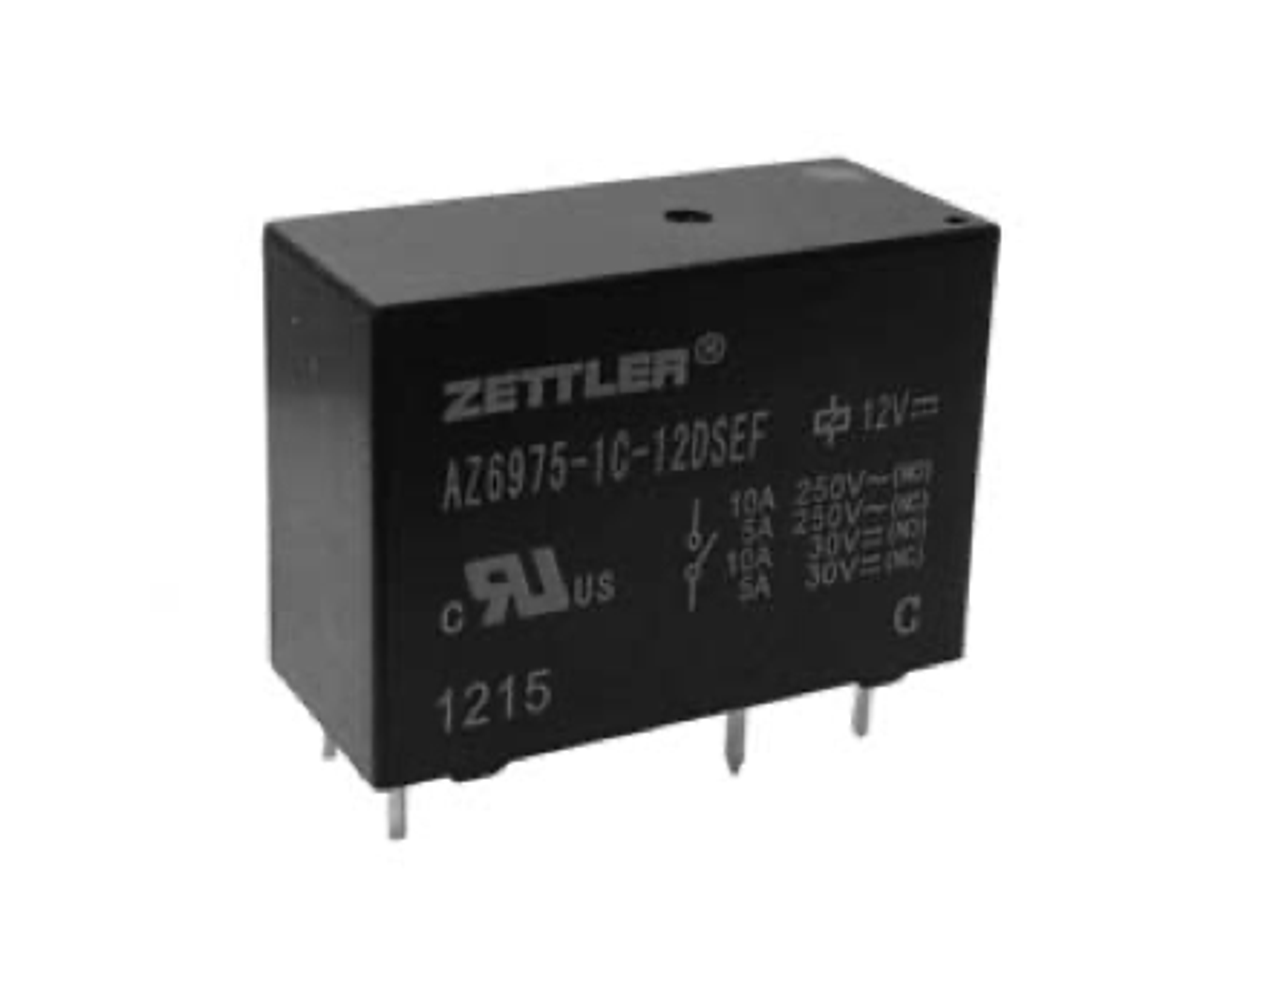 American Zettler AZ6975-1A-48D Power Relay